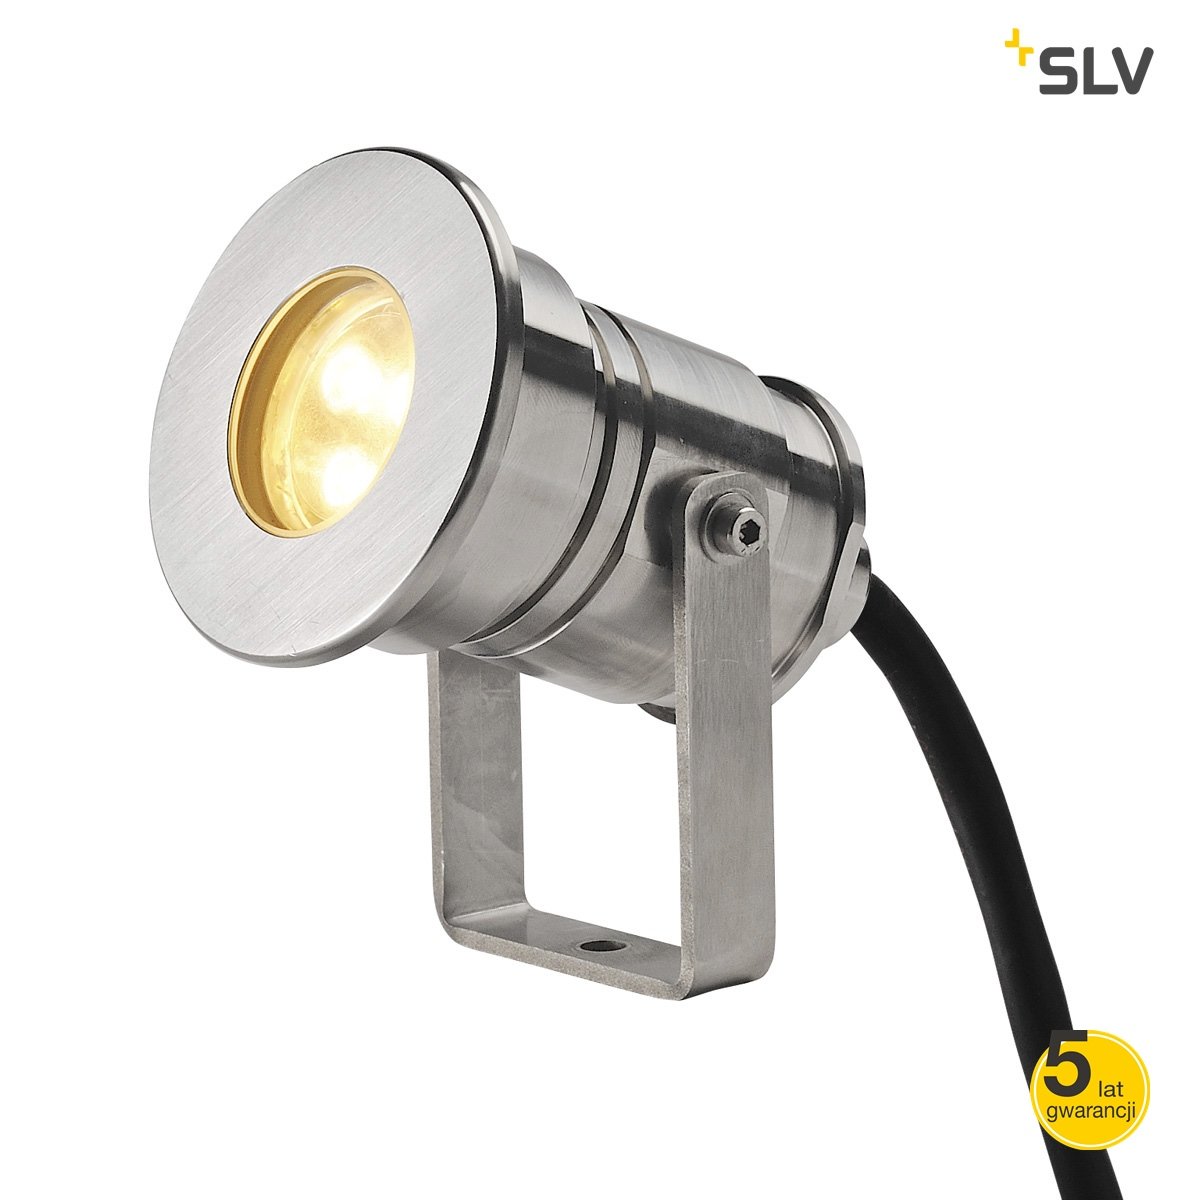 Zdjęcia - Naświetlacz LED / lampa zewnętrzna SLV Reflektor ogrodowy SPOTLINE Dasar, 7 W, LED, szary, barwa biała ciepła, 10 